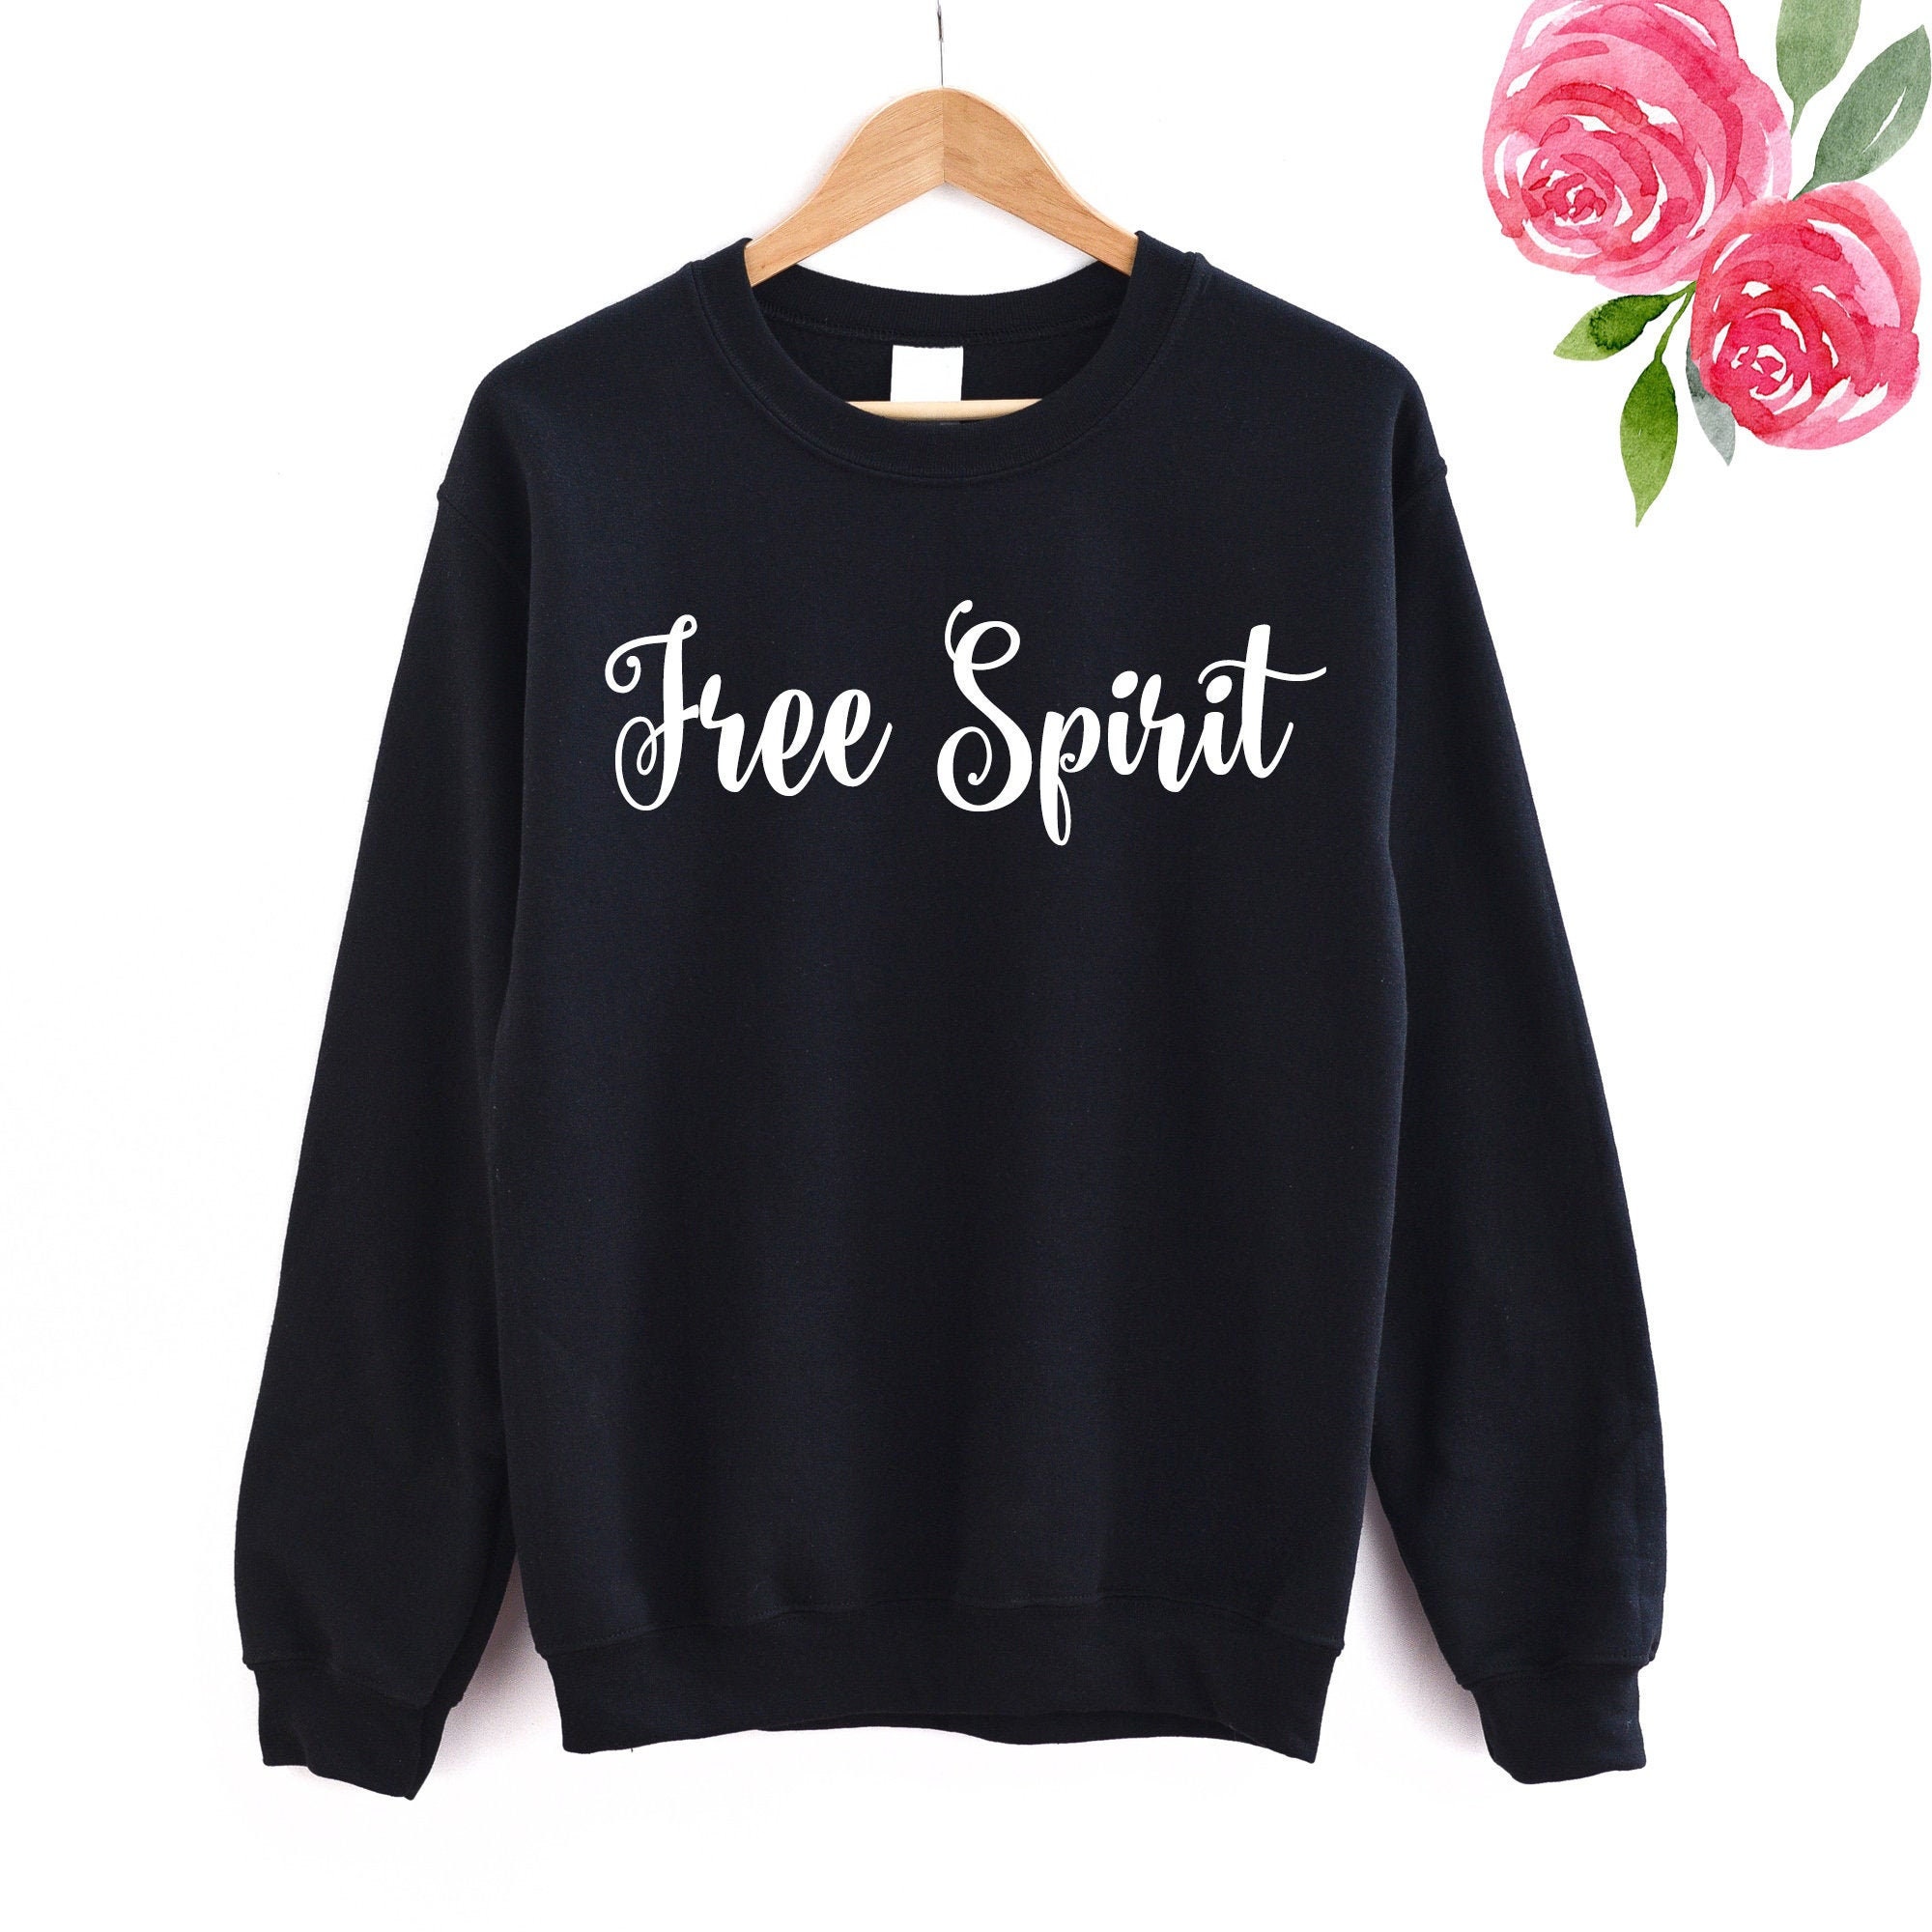 Free Spirit Jumper Sweatshirt Sweater Gift Black or White - Etsy UK